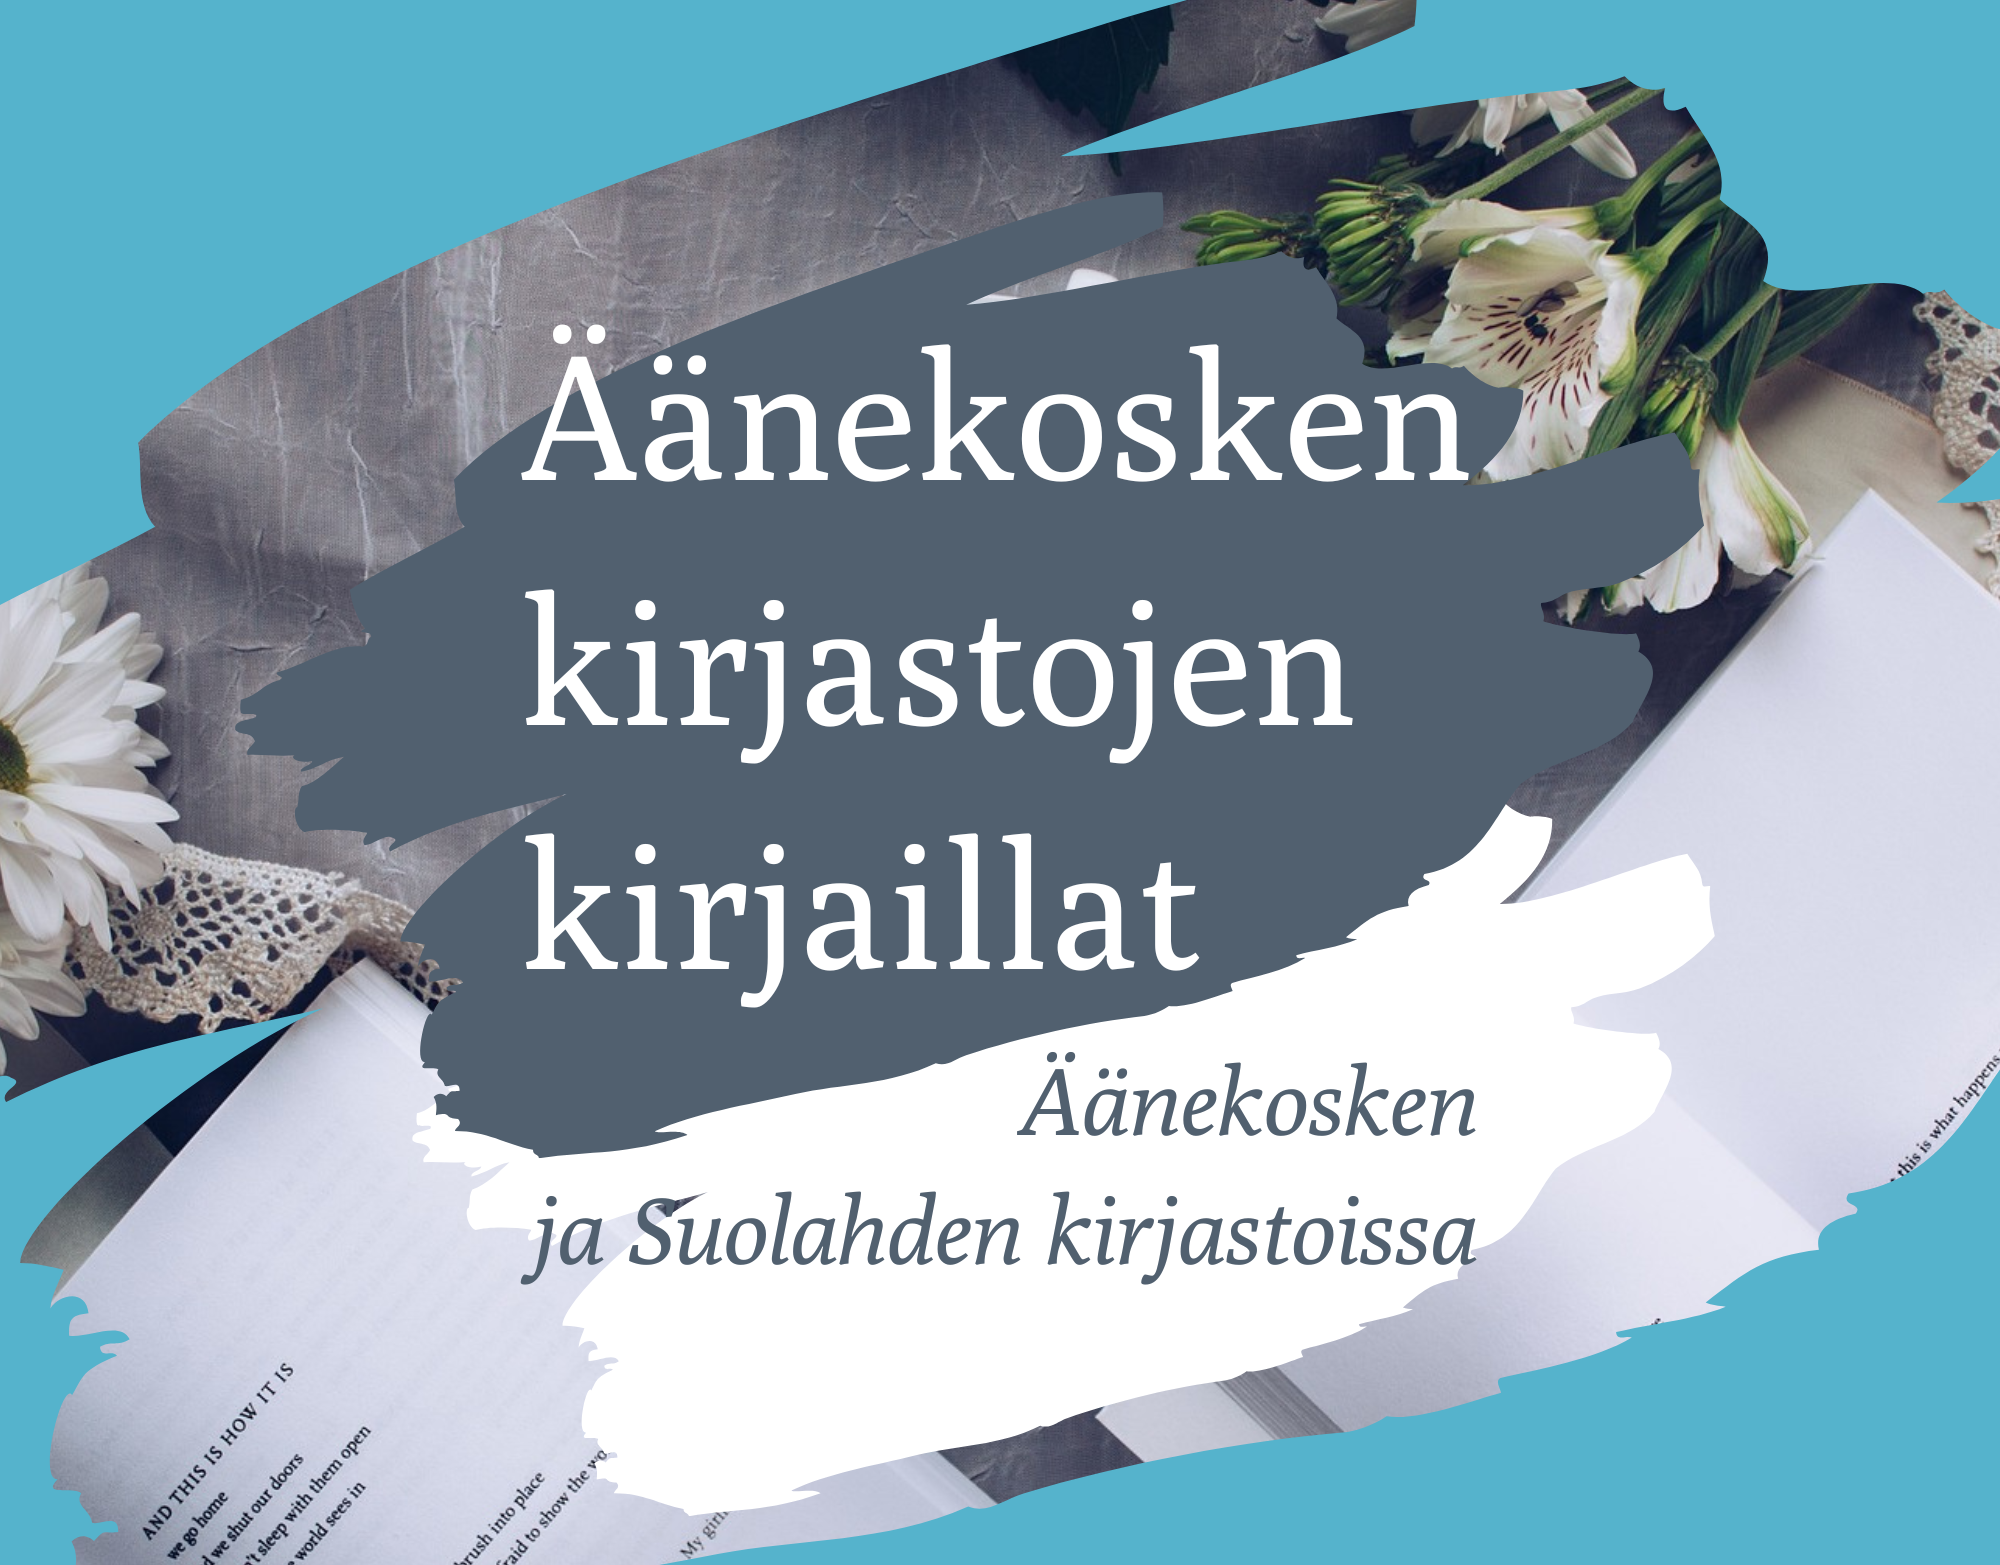 kuvitusgrafiikka, jossa lukee sinisen, harmaan ja valkoisen sävyissä 'Äänekosken kirjastojen kirjaillat Äänekosken ja Suolahden kirjastoissa'